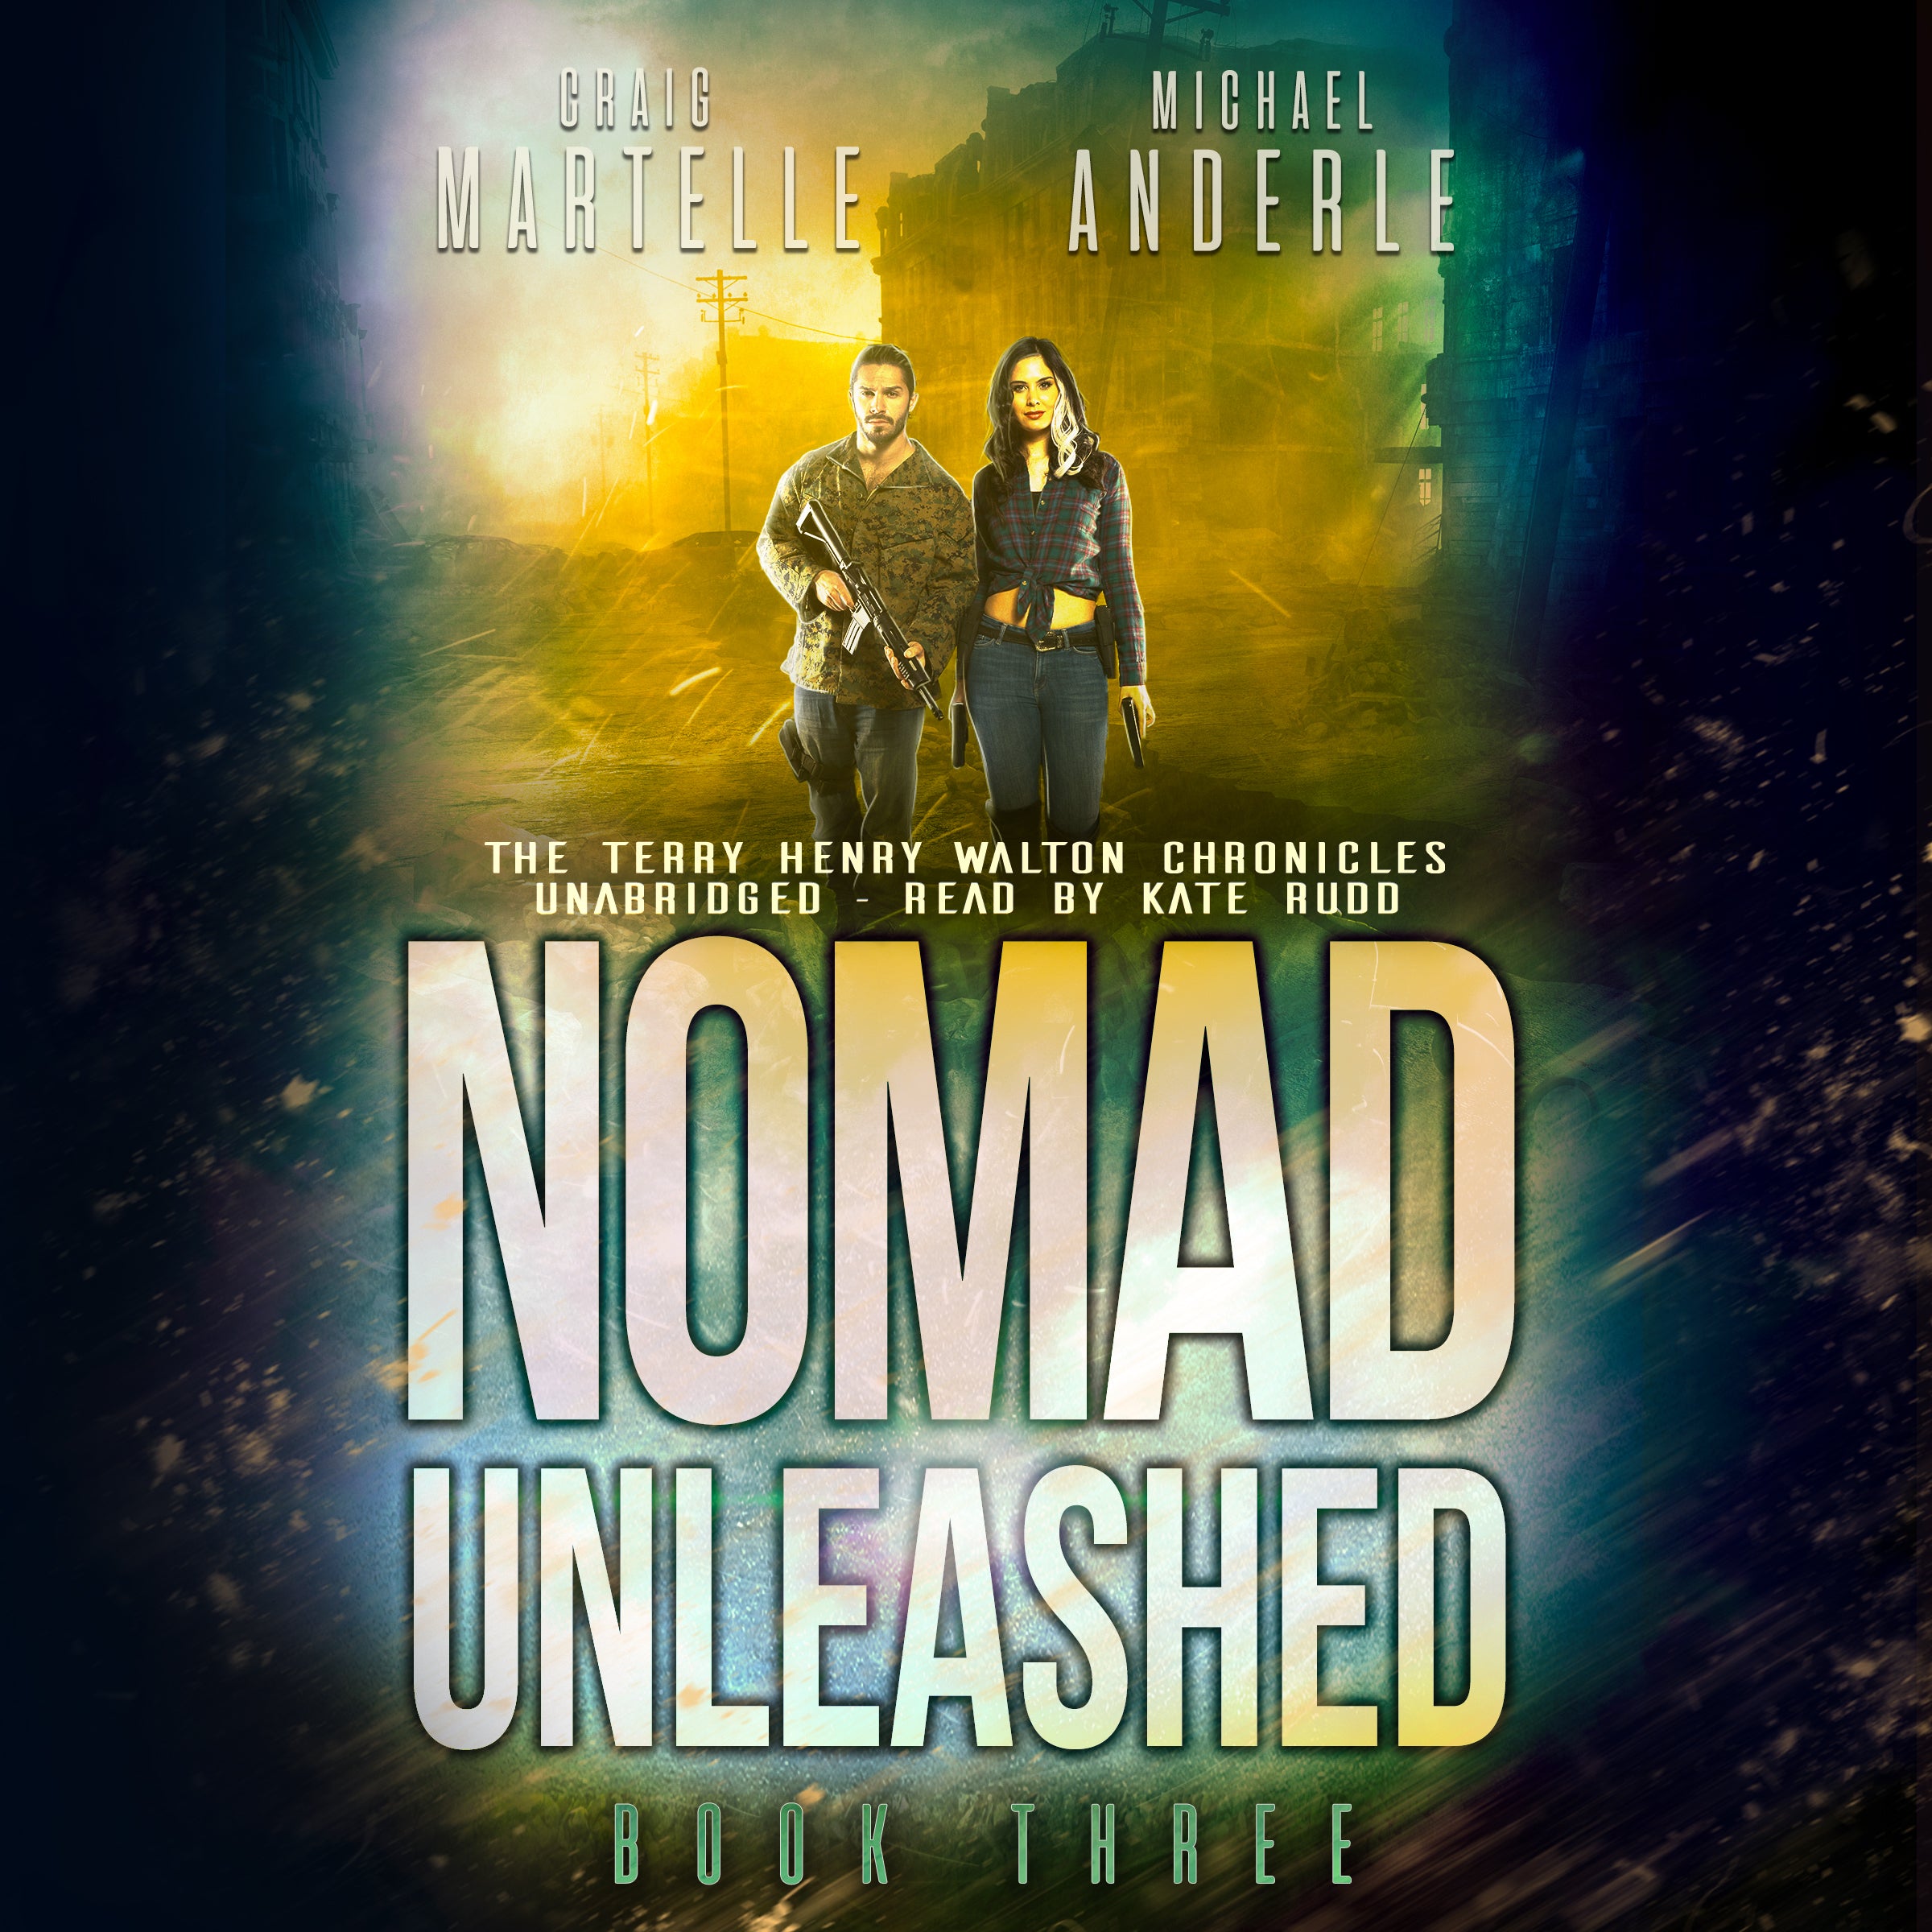 Nomad Unleashed